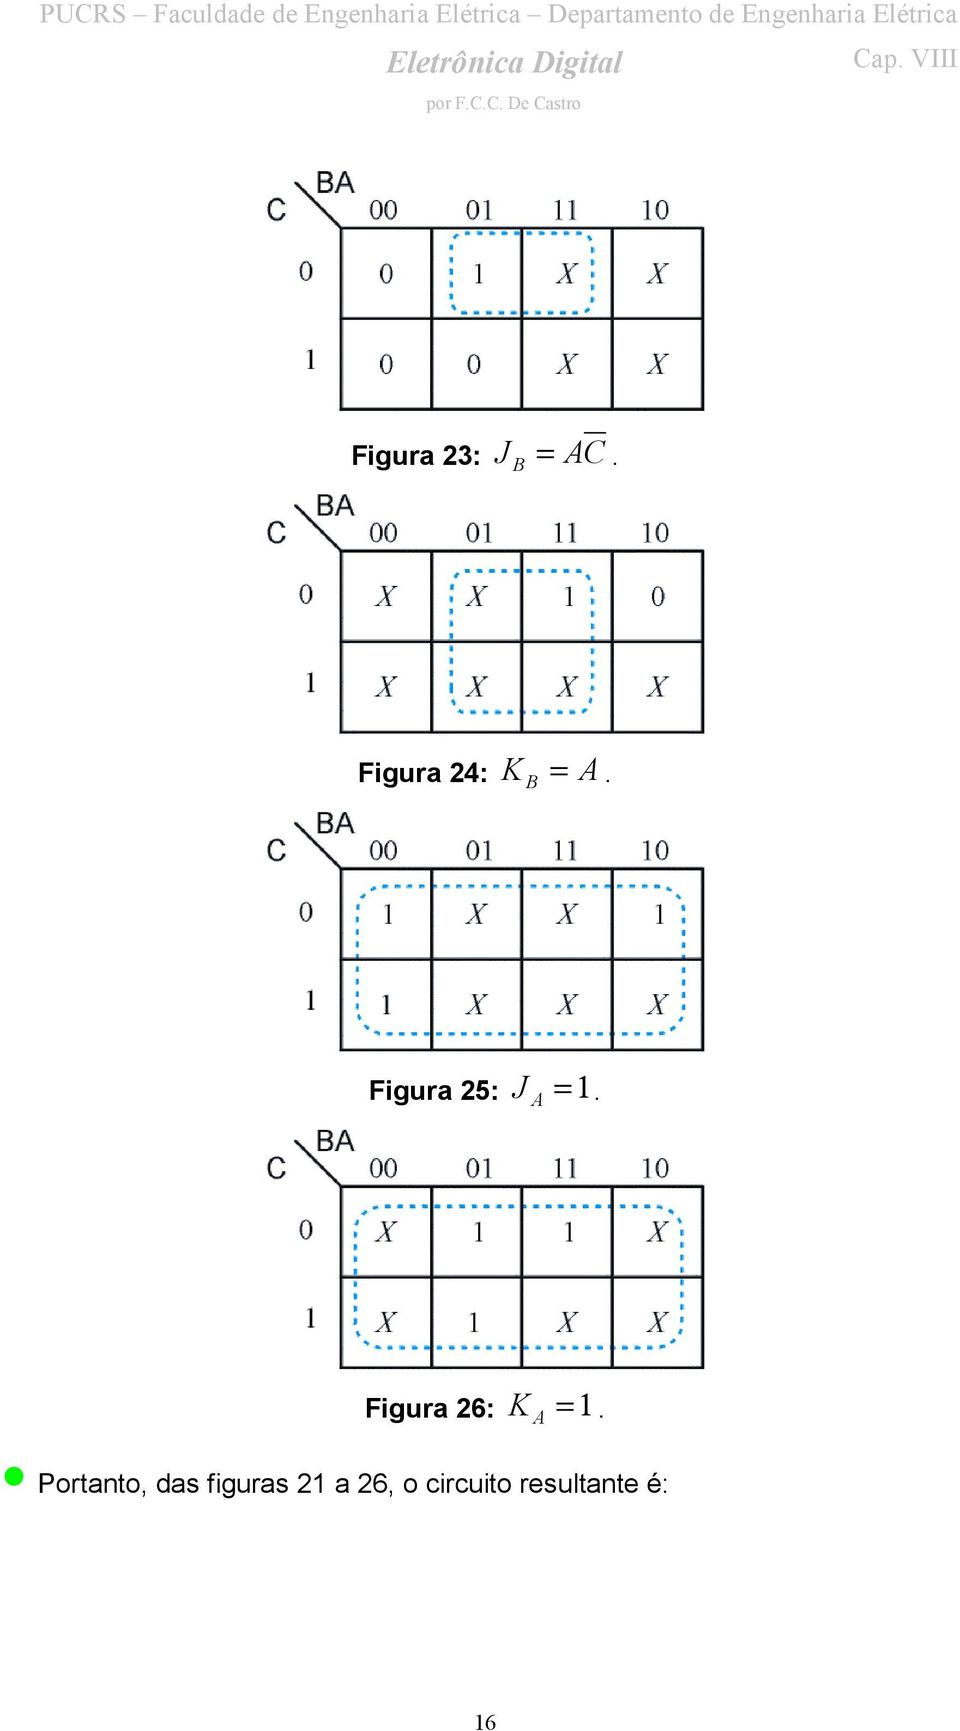 Figura 25: J = 1.